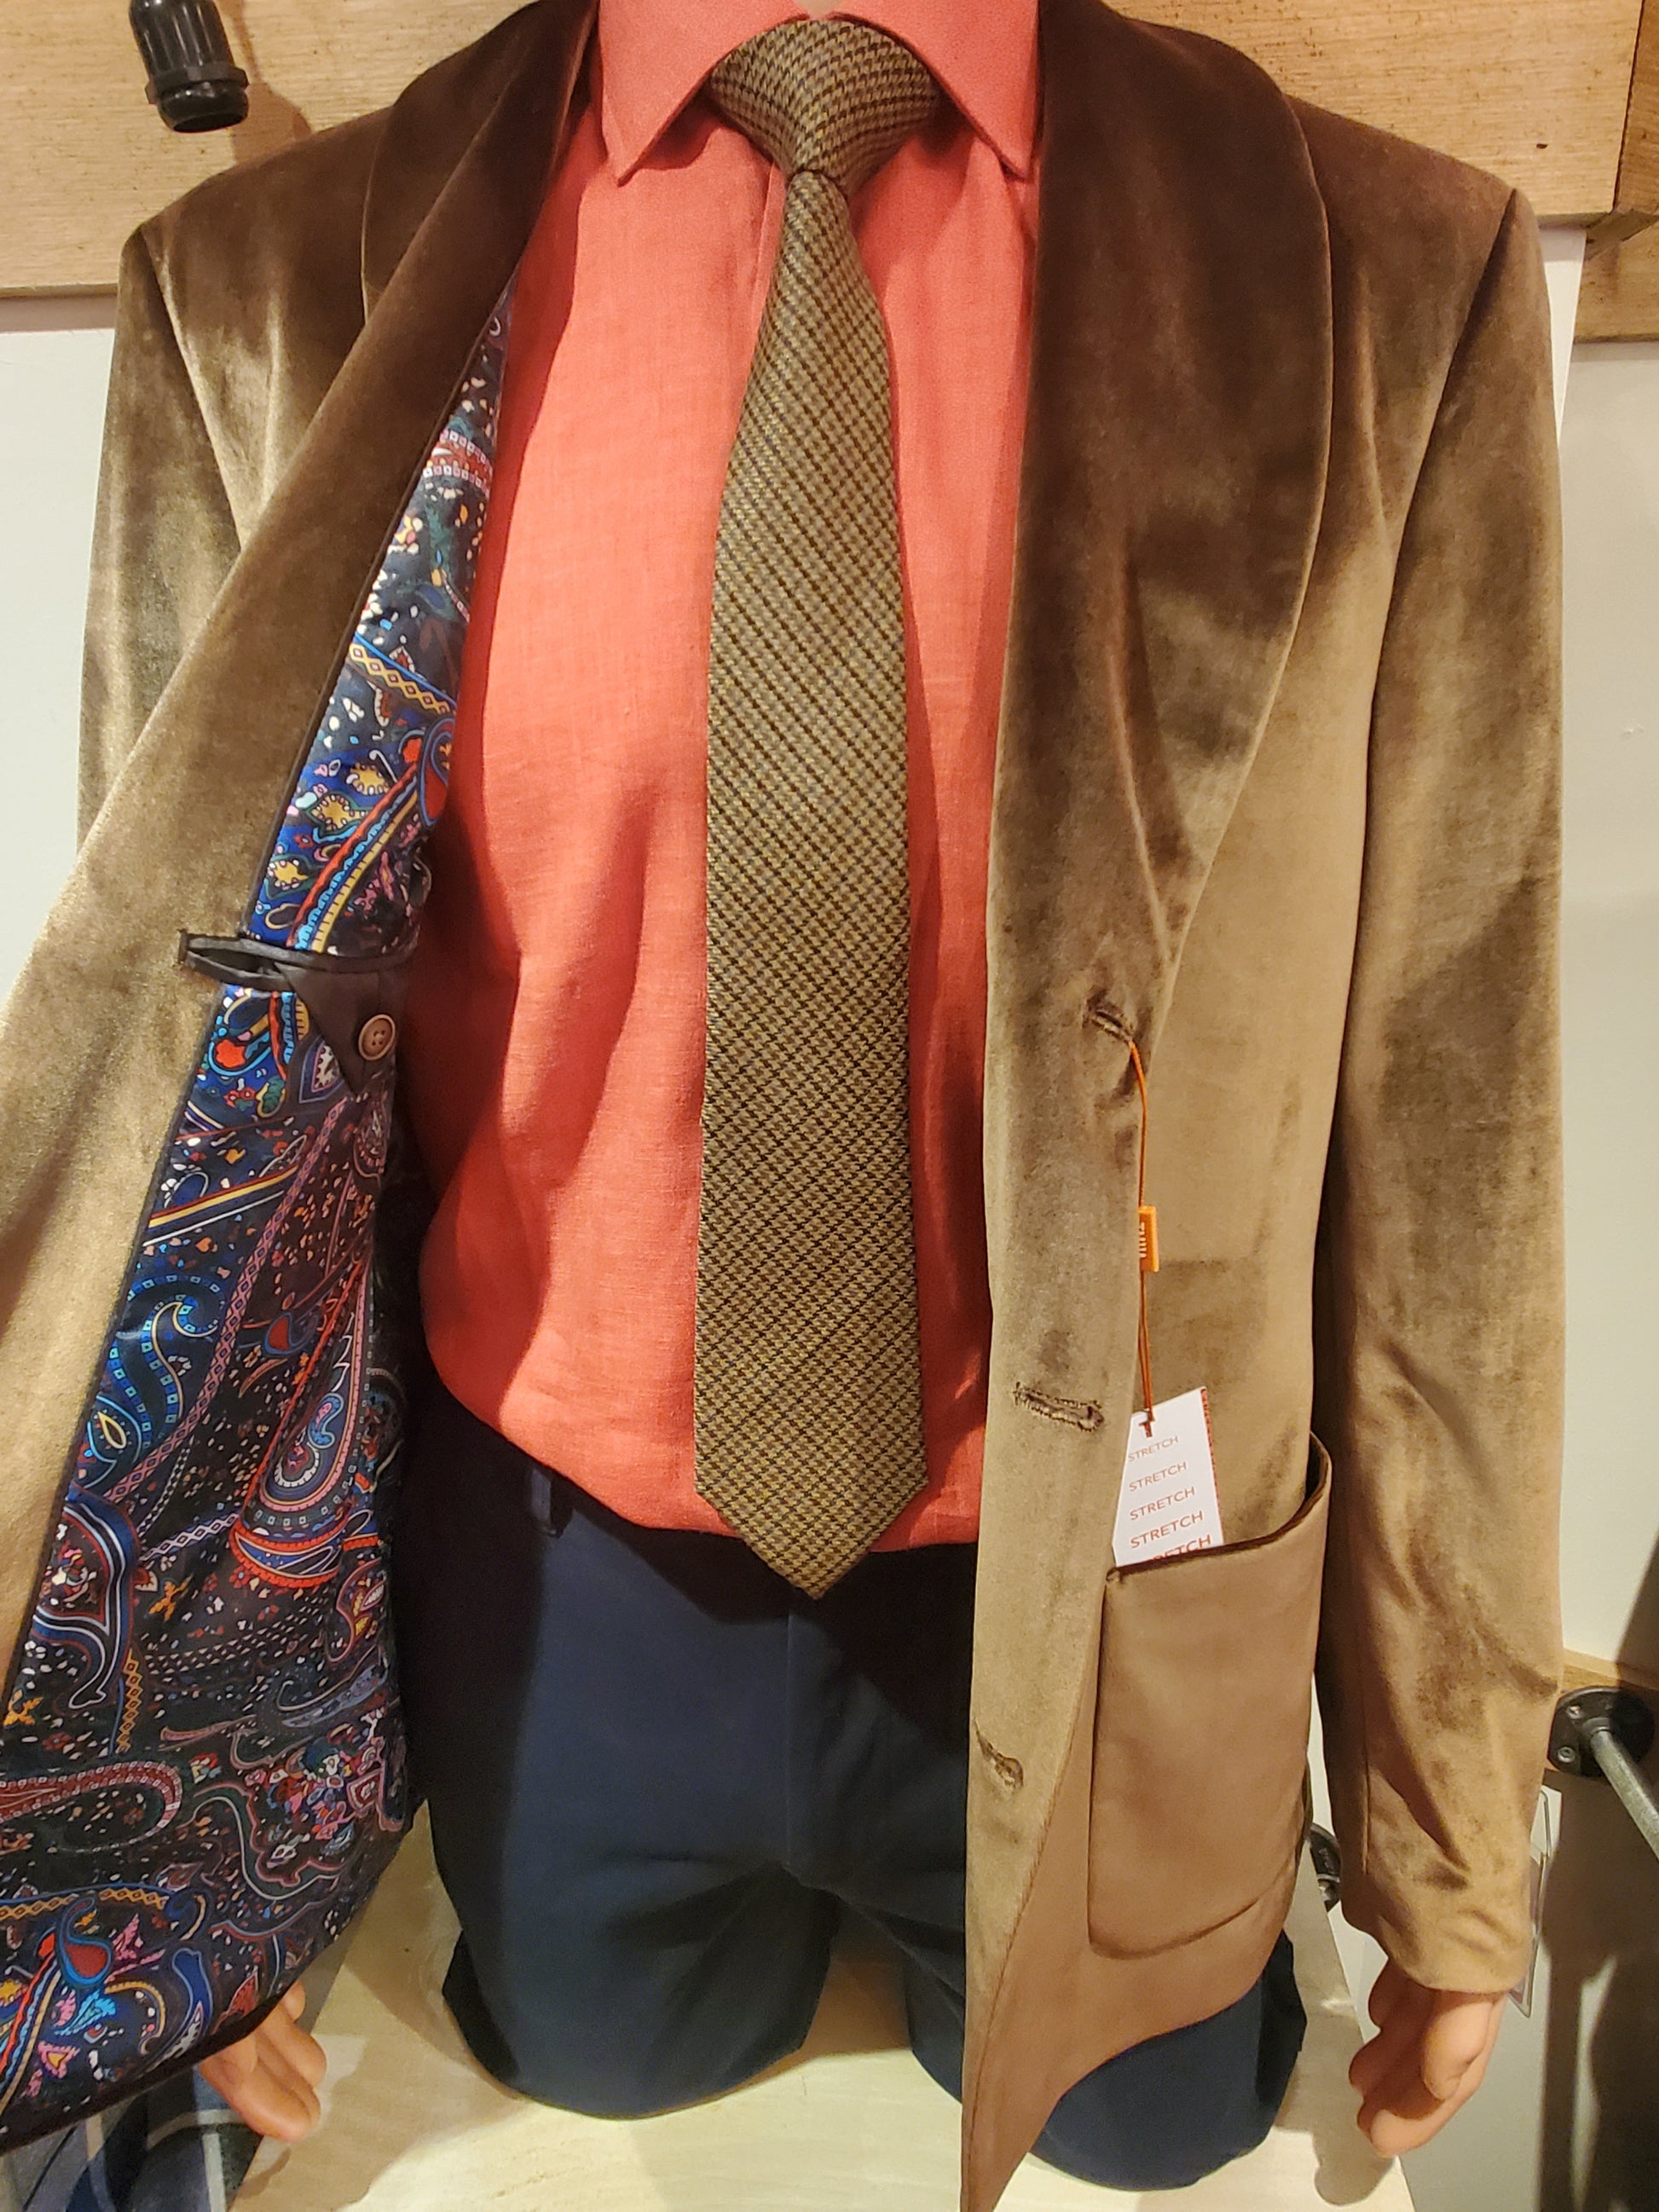 Brown velvet smoking jacket; evening jacket; sports jacket. Paisley lining. Mackinac Island boutique